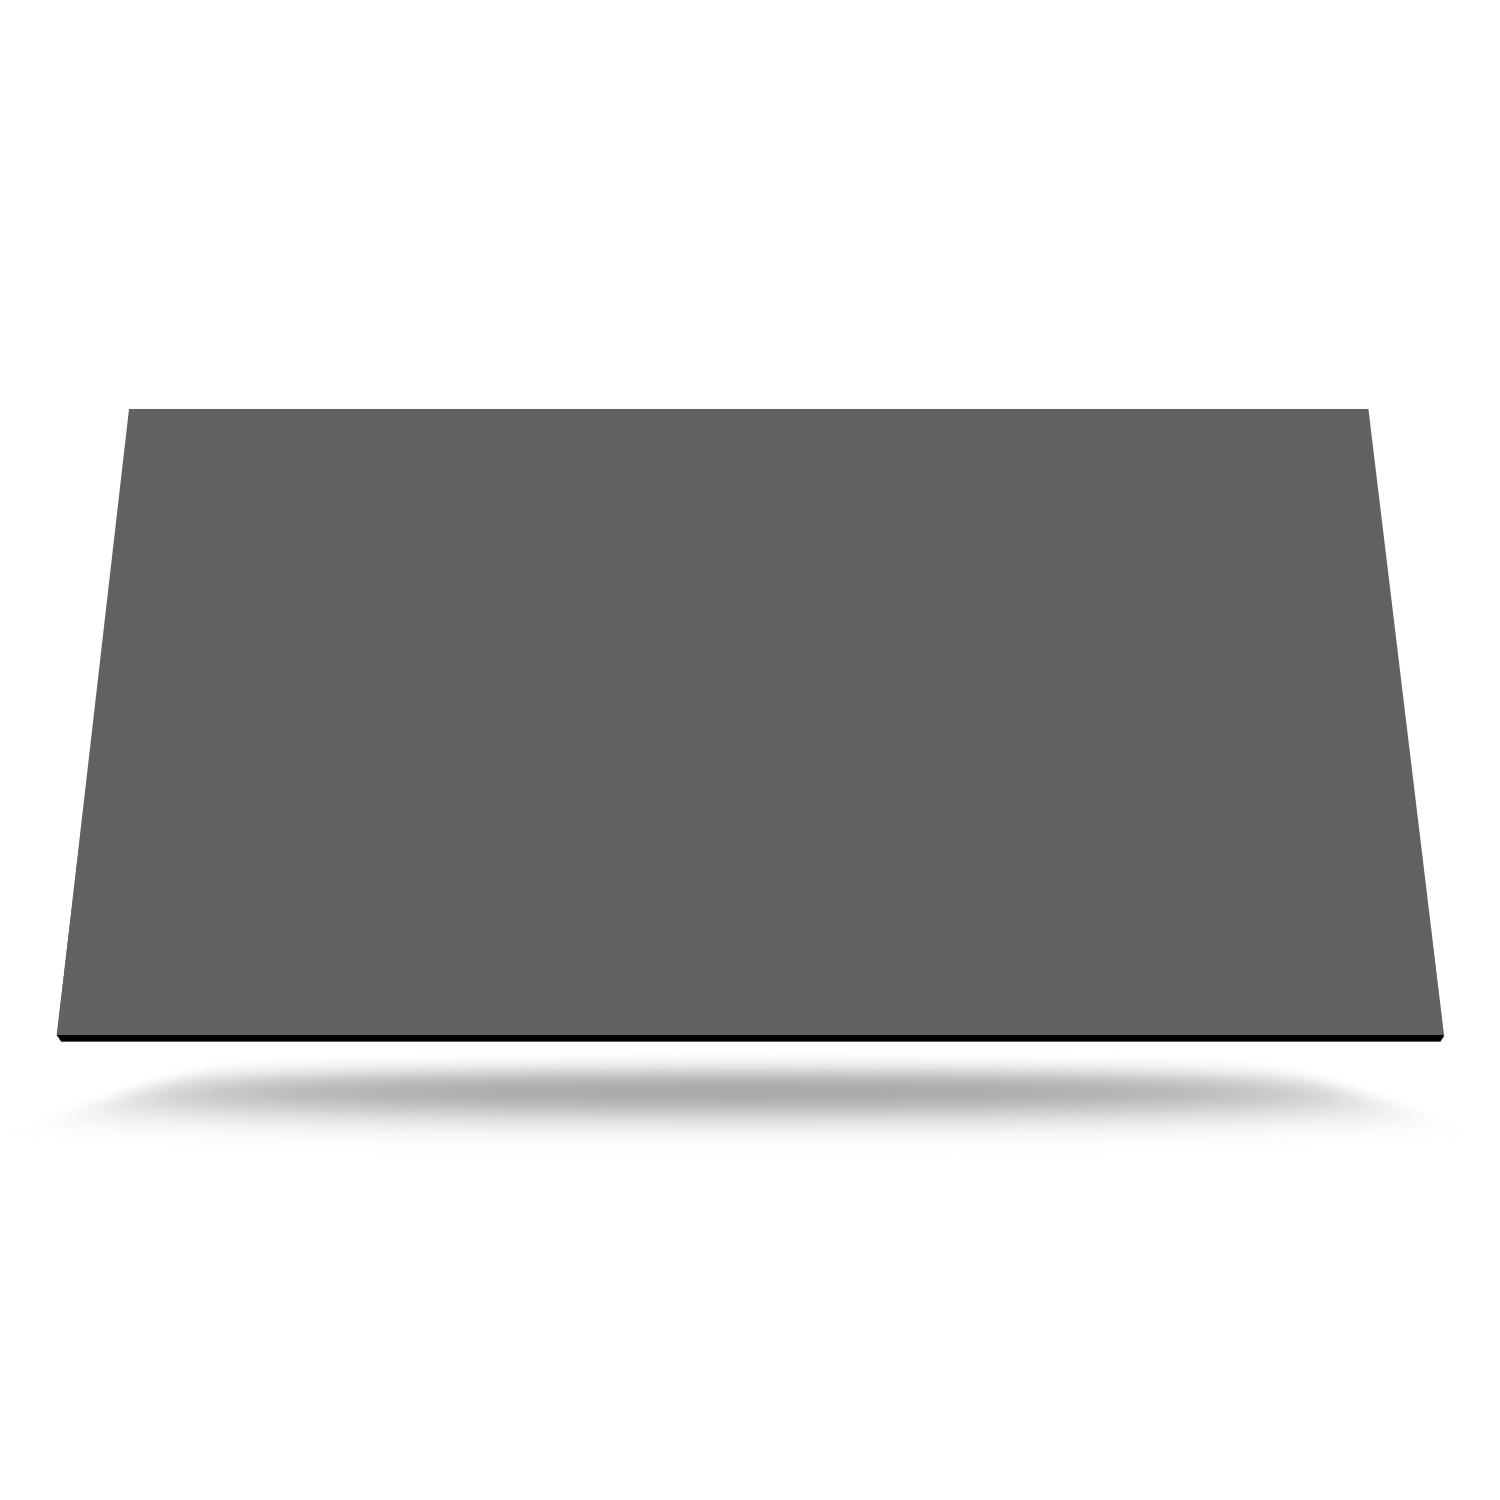 Kompaktlaminat bordplade BP6981 Surface Stål grå på mål